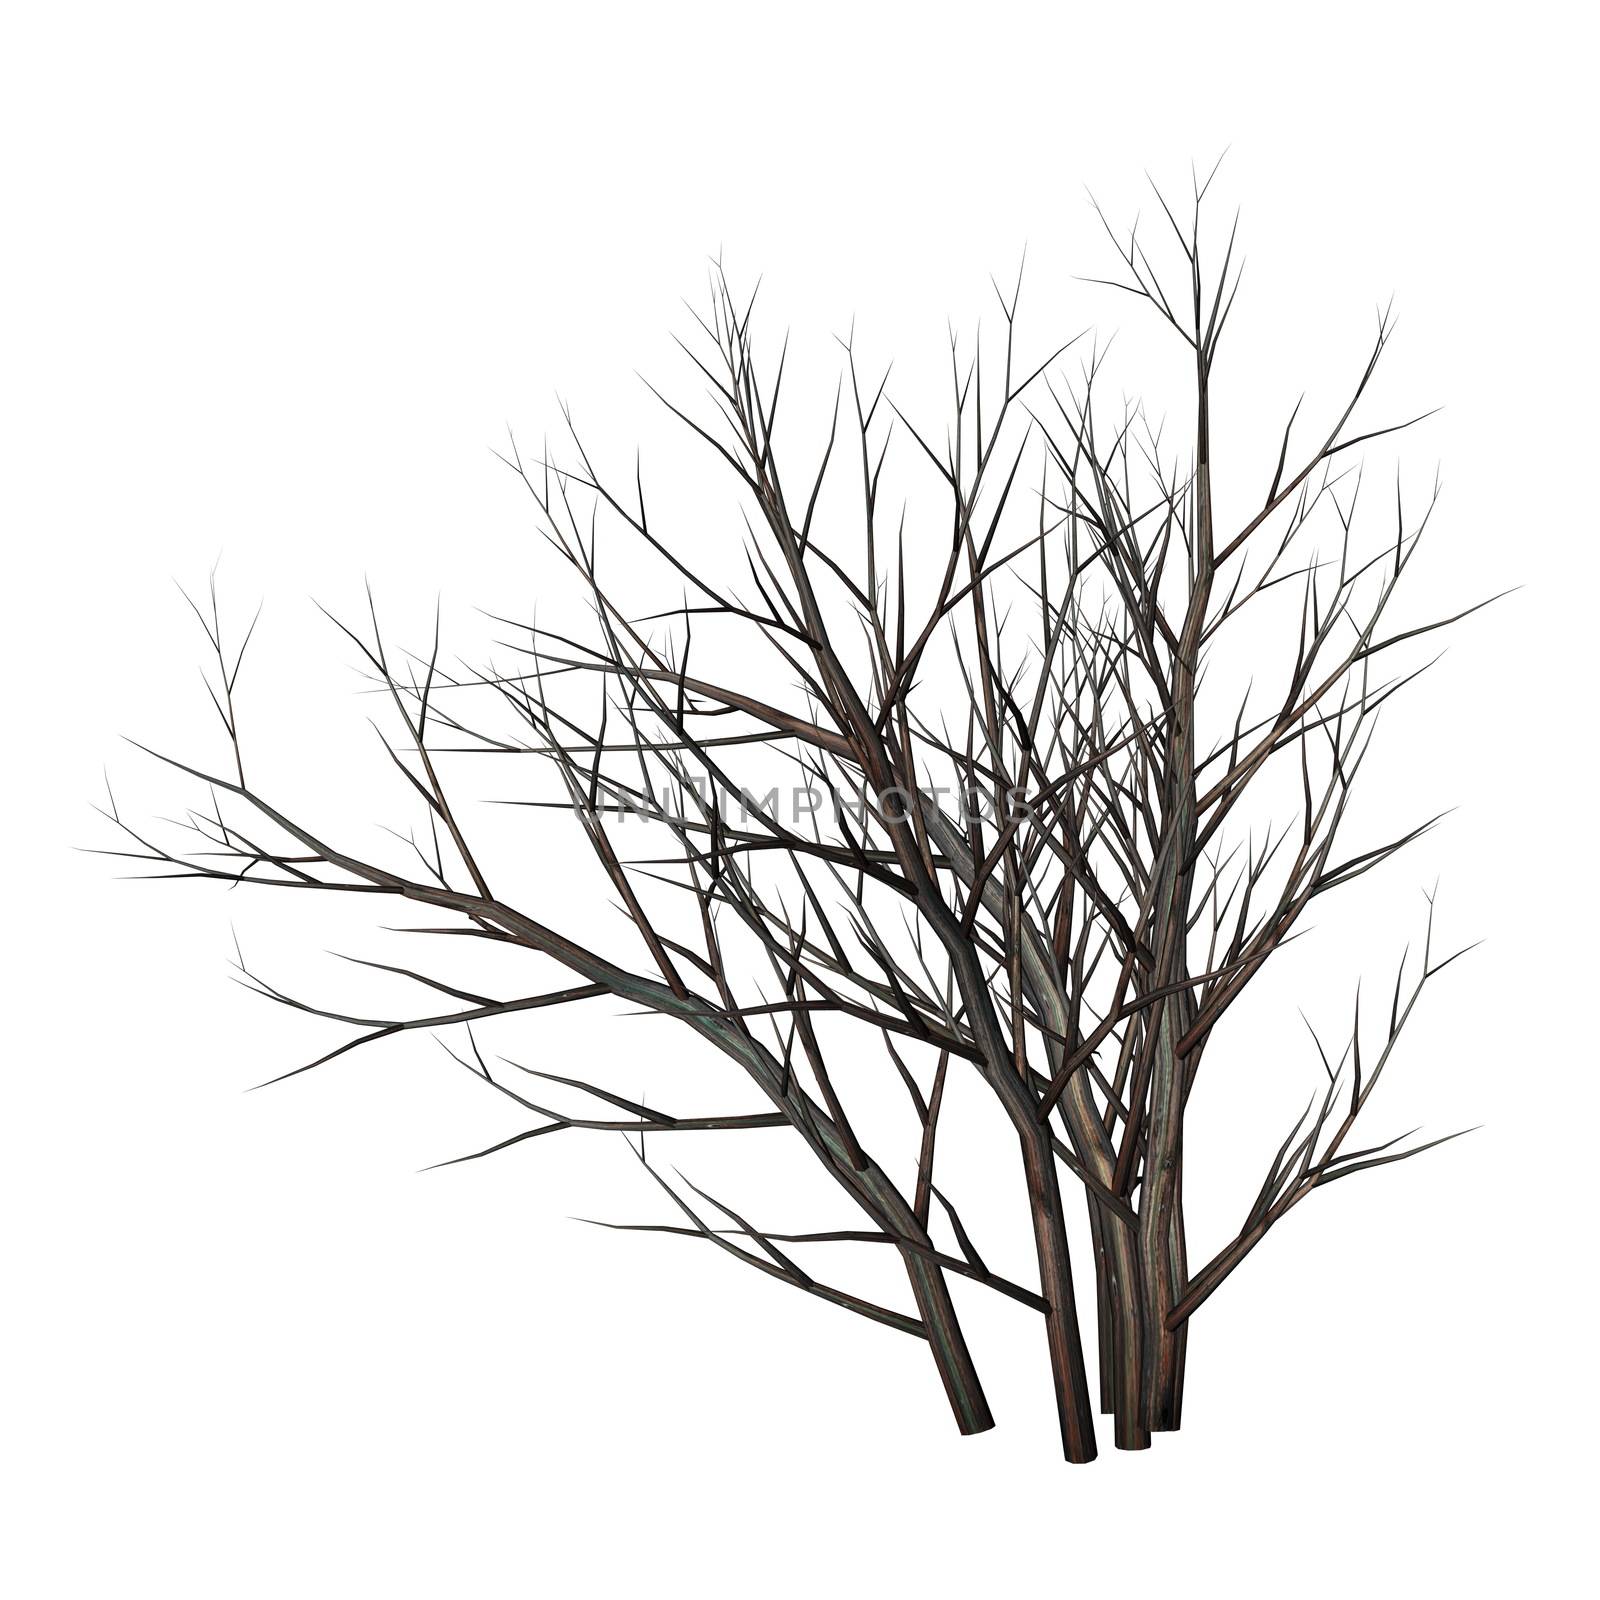 Dead tree bush by night - 3D render by Elenaphotos21